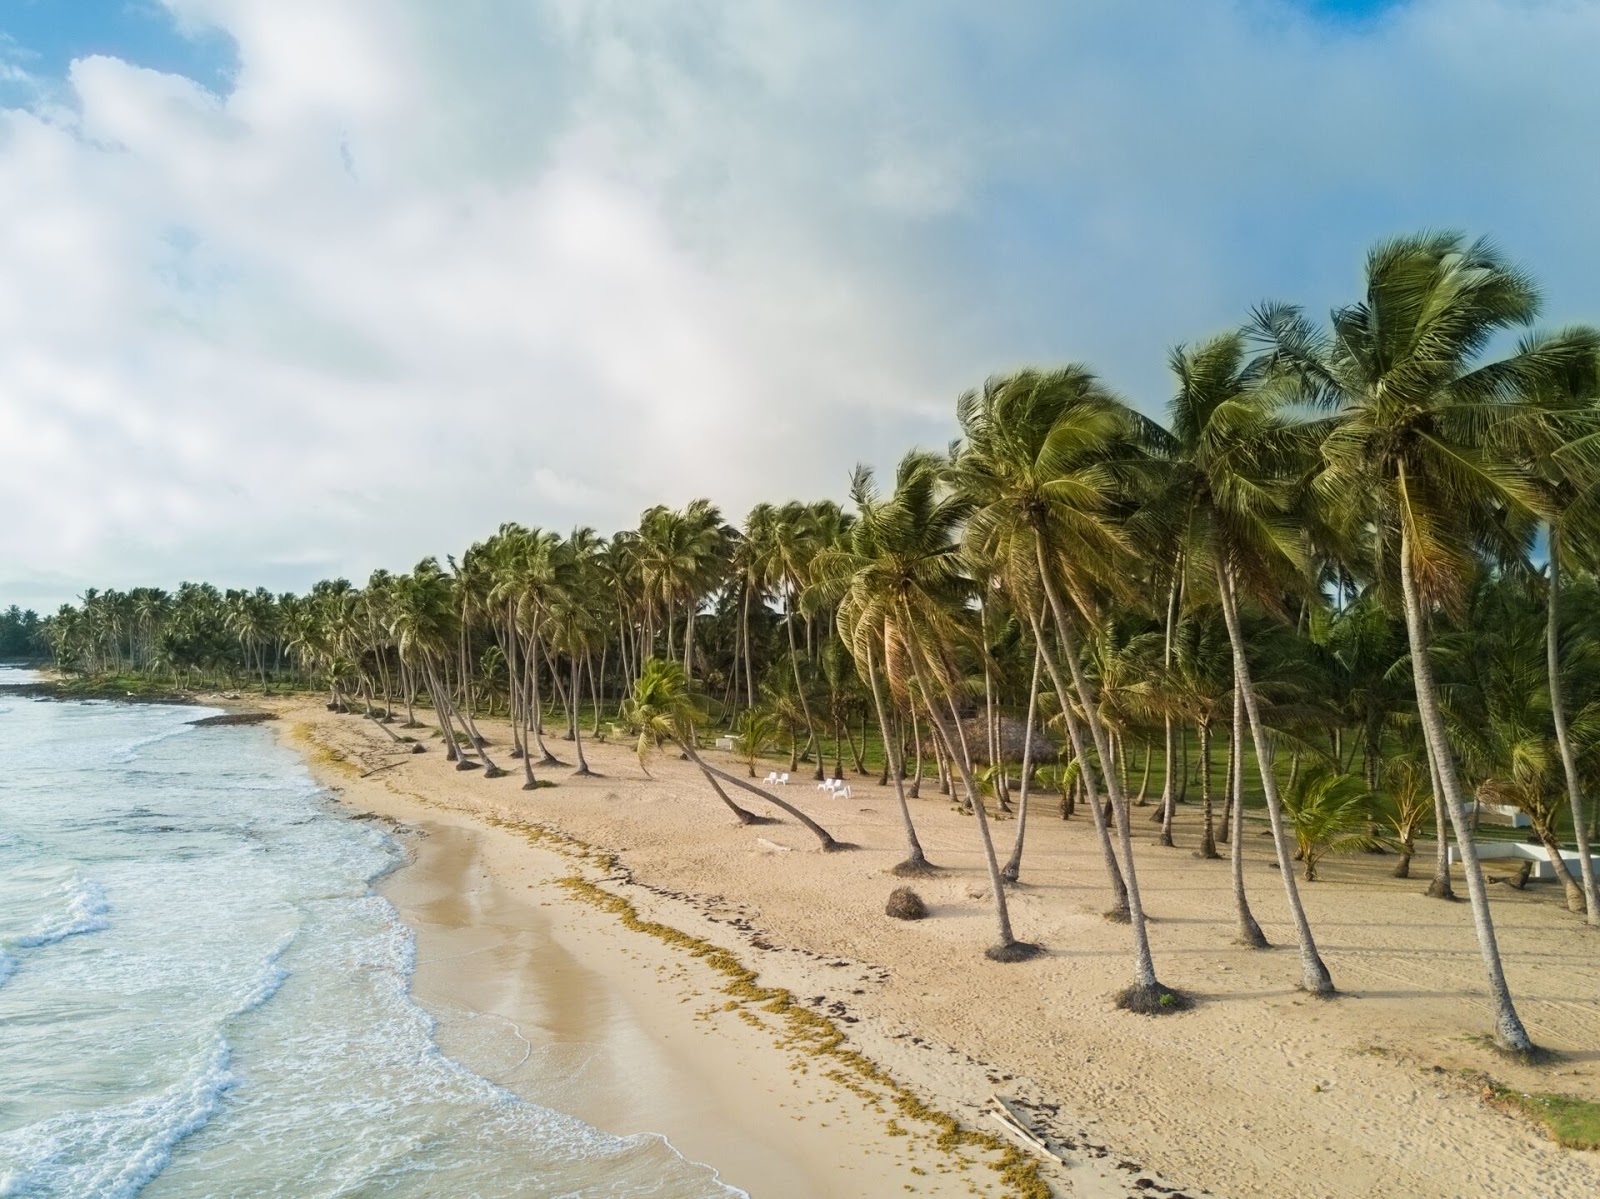 Foto de Playa Miguelito com areia fina e brilhante superfície